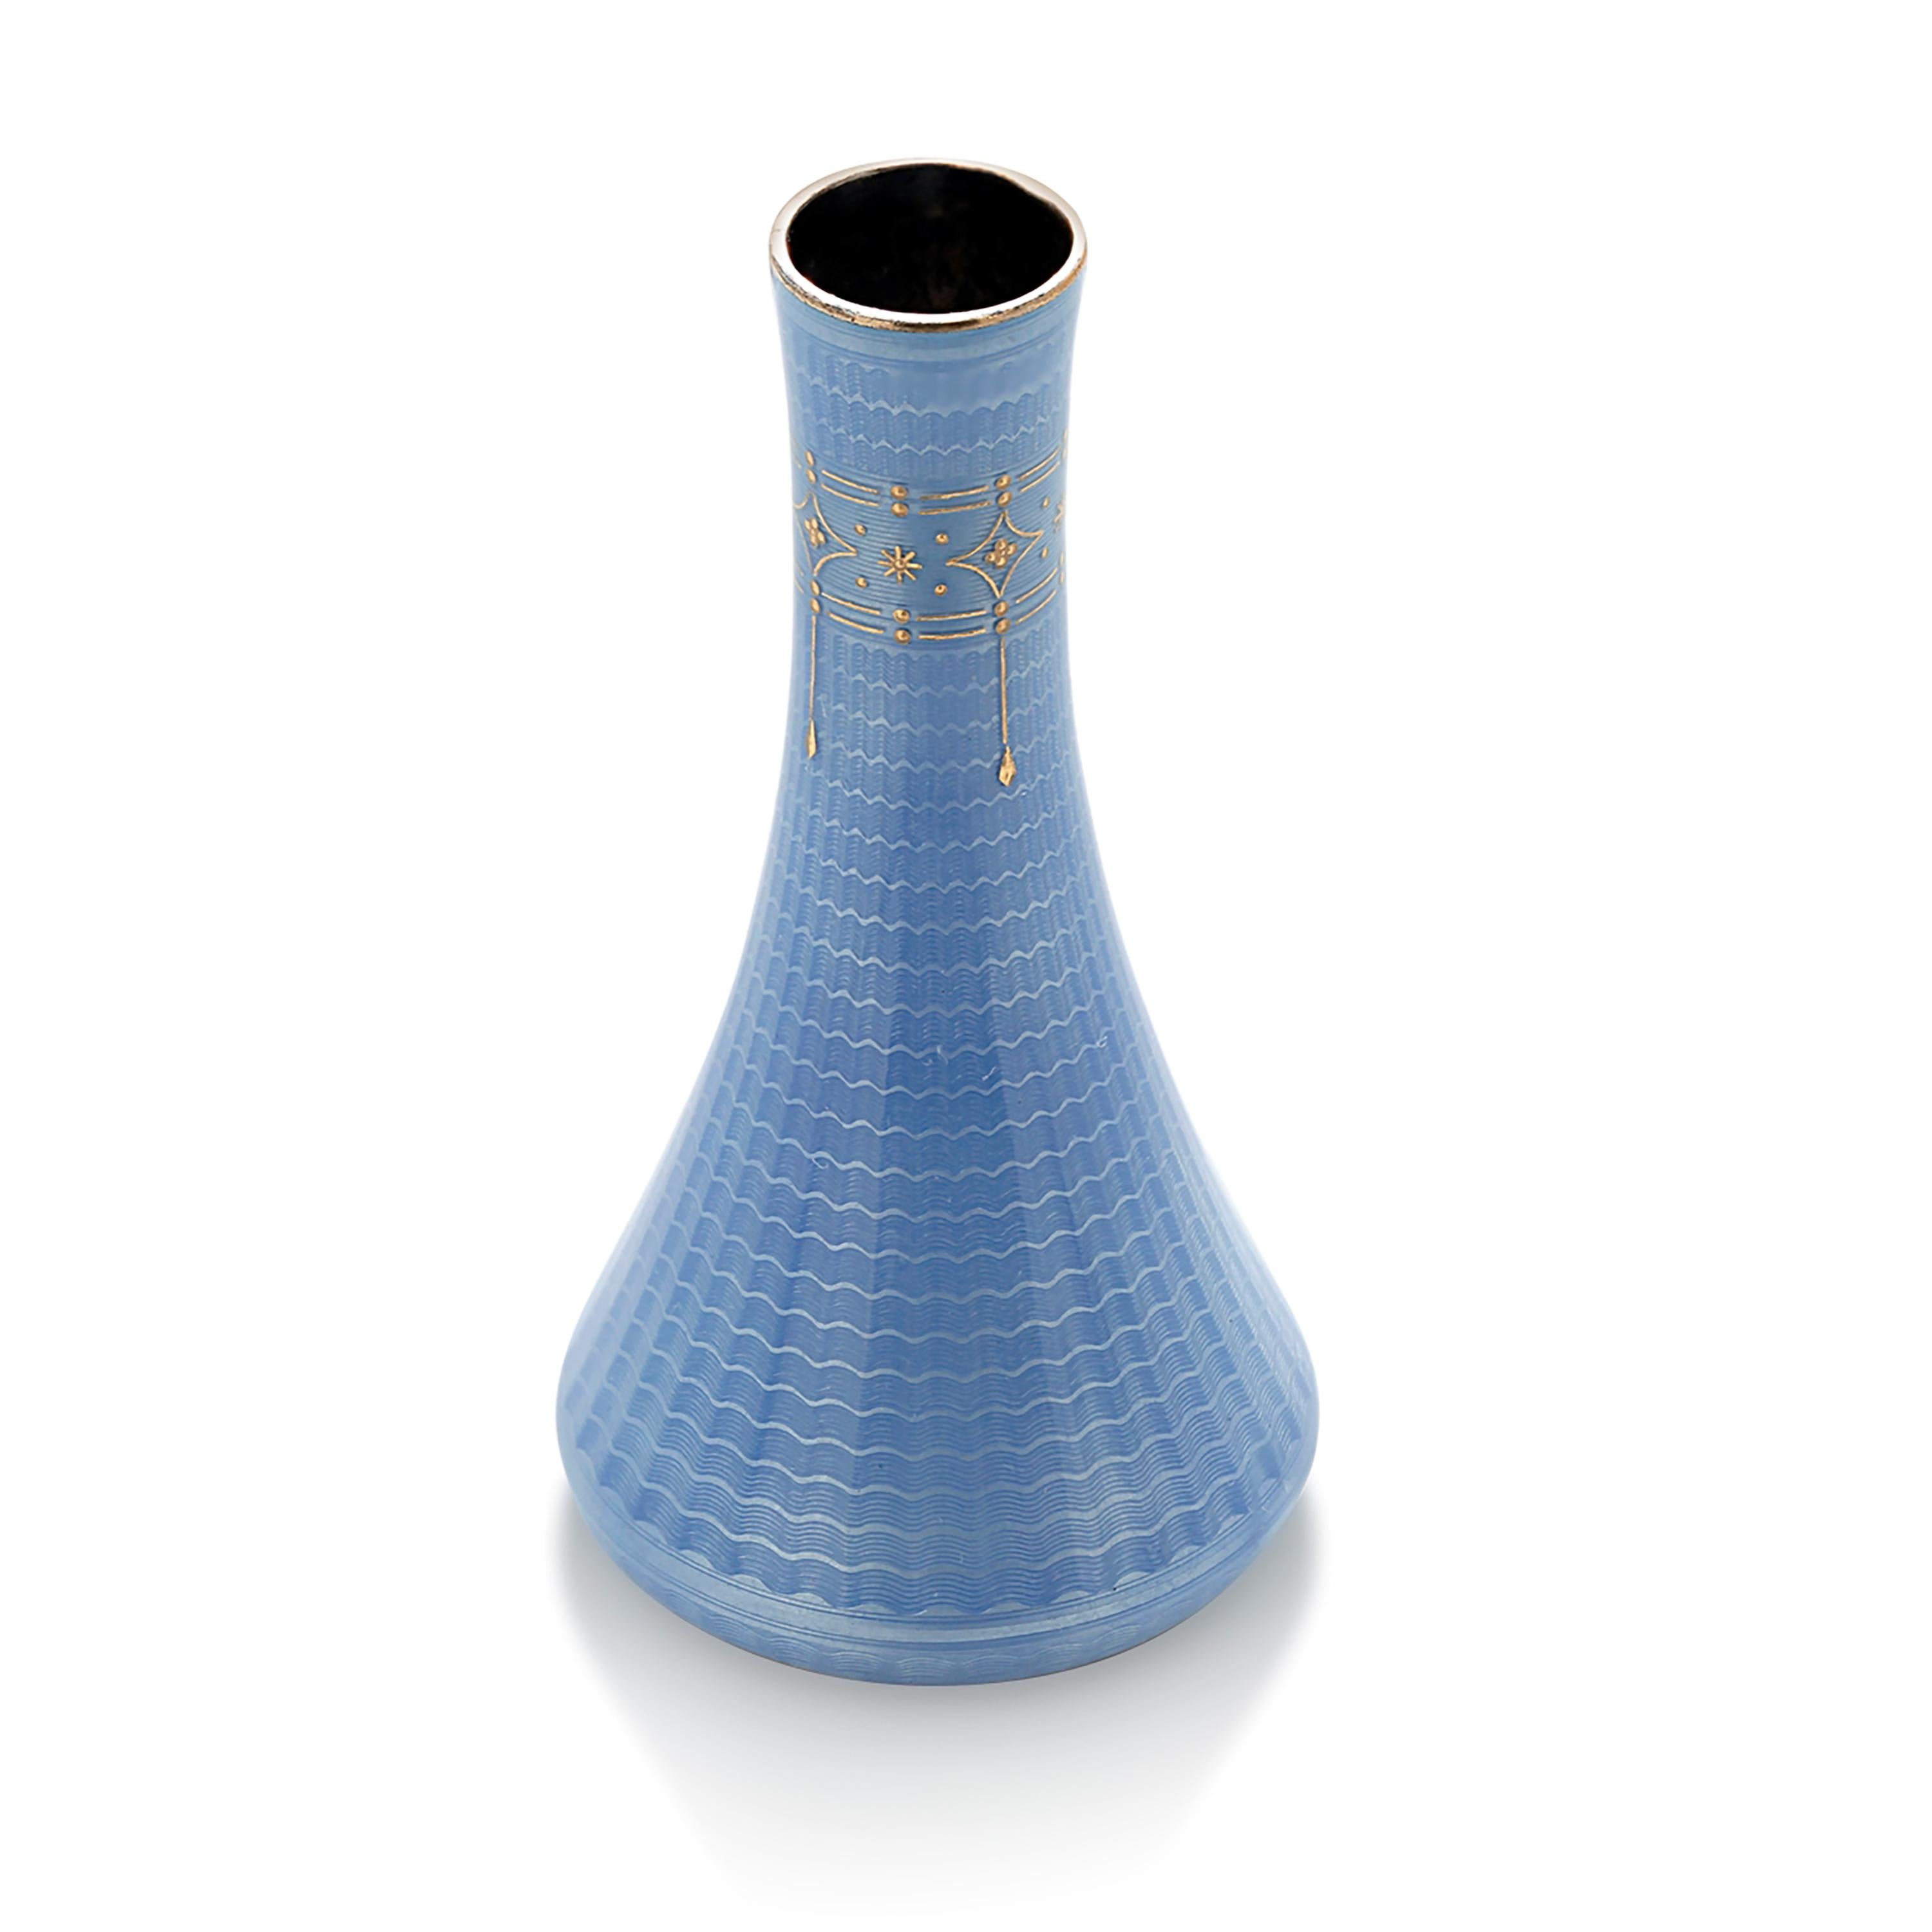 Art Deco Vintage Guilloche Enameled Silver Bud Vase in Blue Translucent Enamel